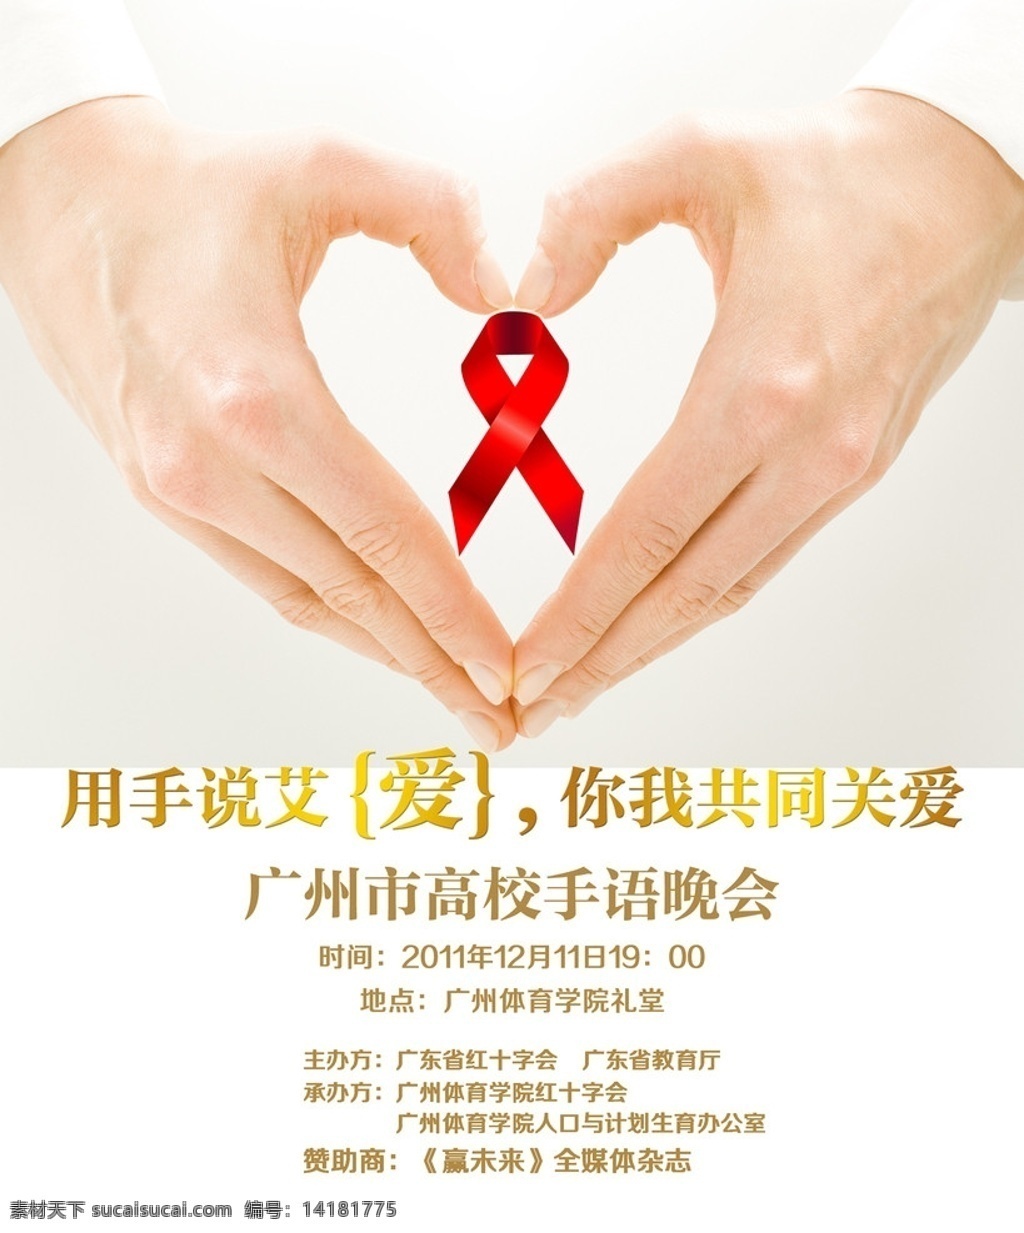 关爱海报 艾滋病海报 爱心手 艾滋病红丝带 广告设计模板 源文件